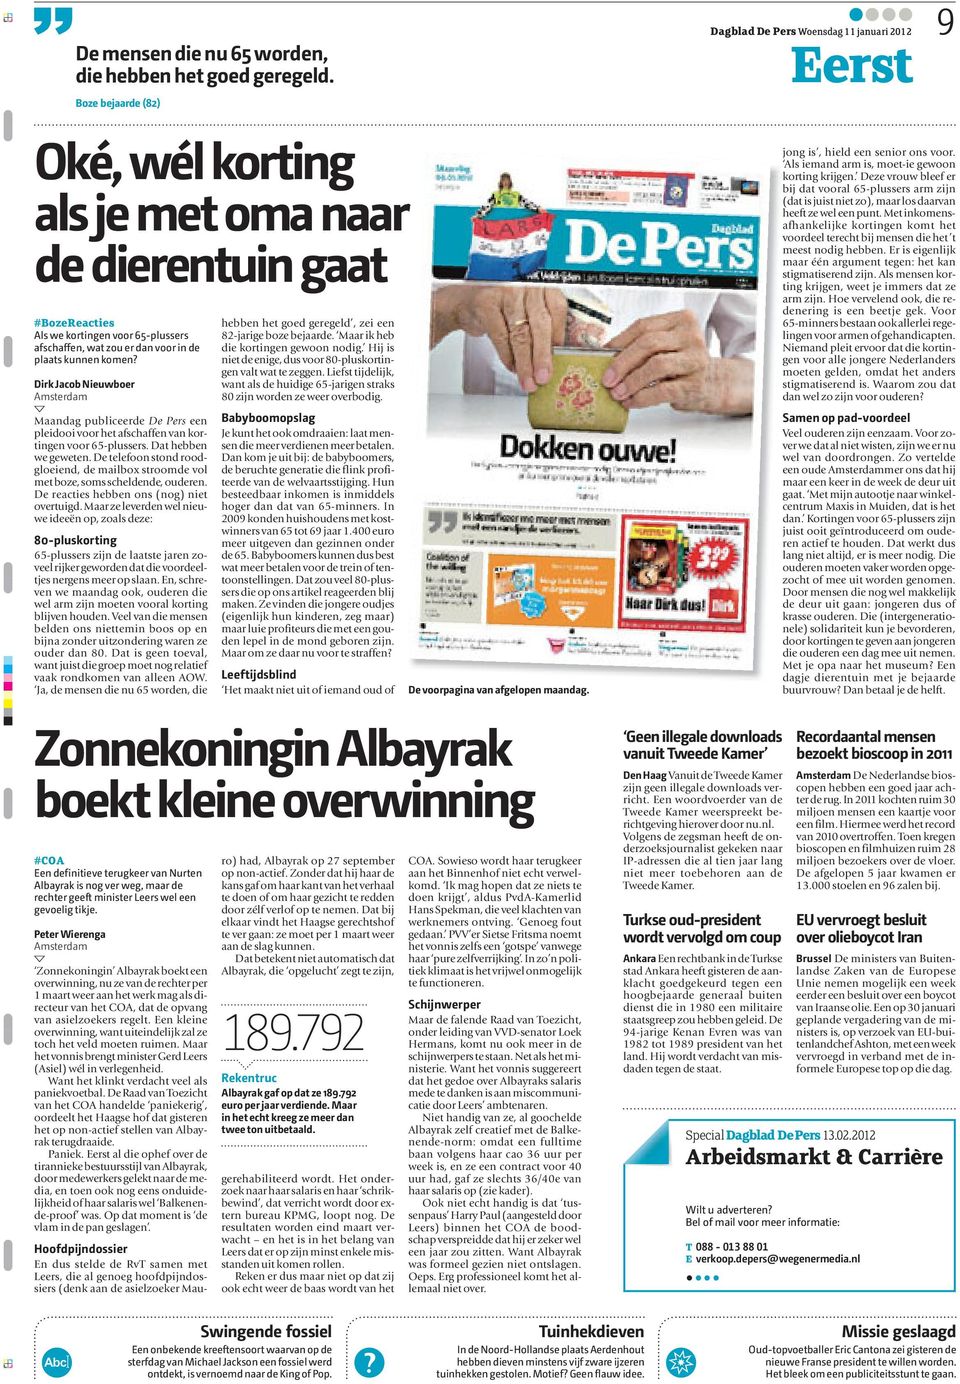 Dirk Jacob Nieuwboer Maandag publiceerde De Pers een pleidooi voor het afschaffen van kortingen voor 65-plussers. Dat hebben we geweten.